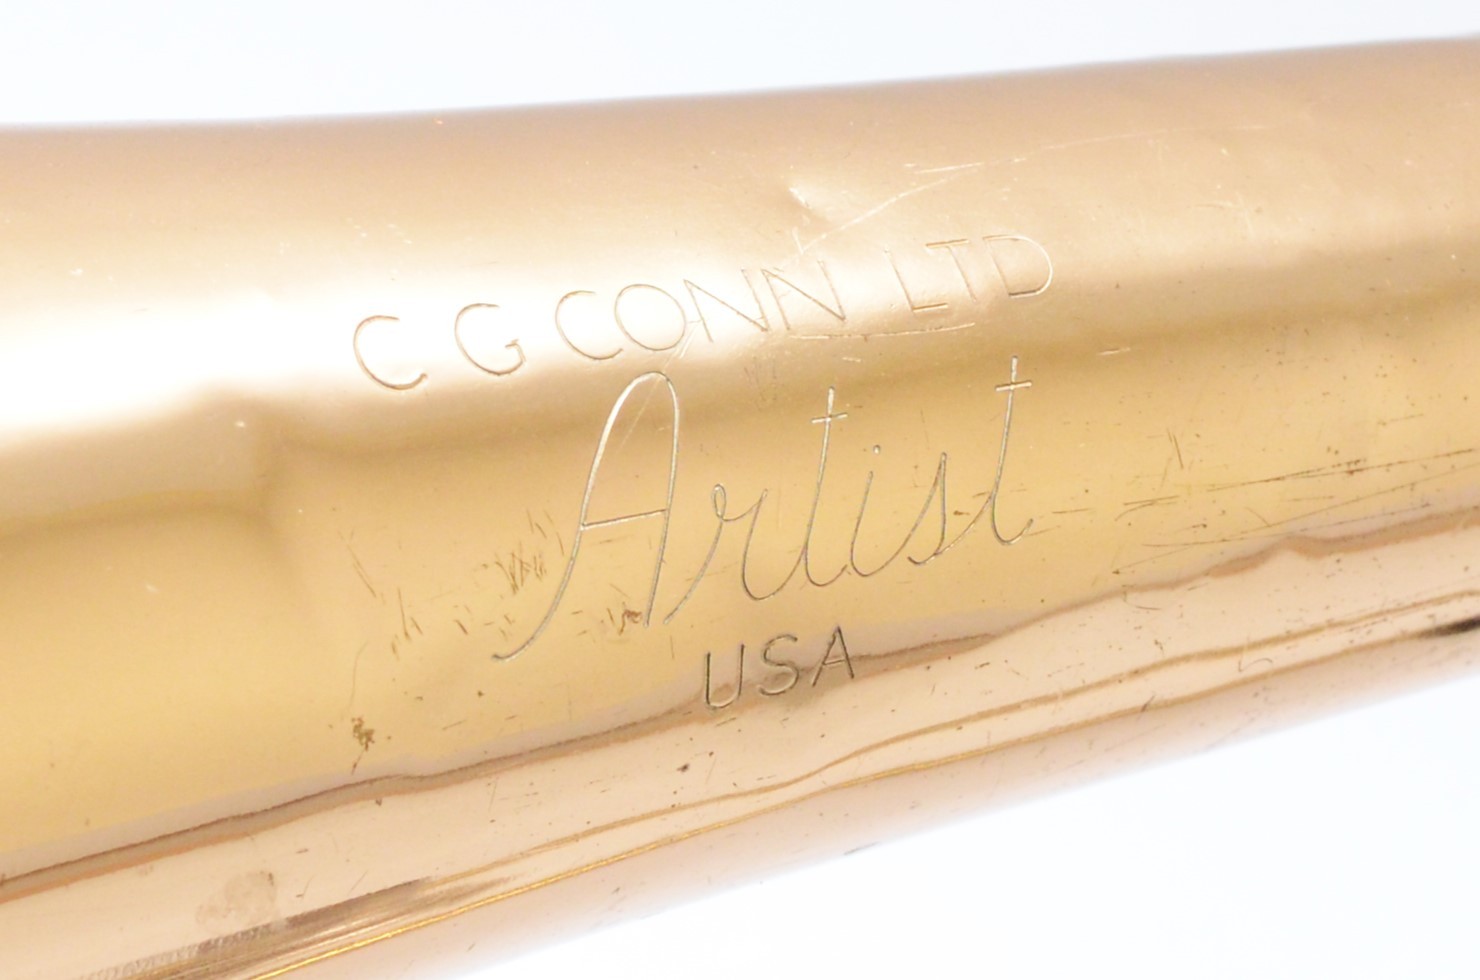 A cased trombone 'Artist' stamped C.G Conn Ltd U.S.A. - Image 3 of 3